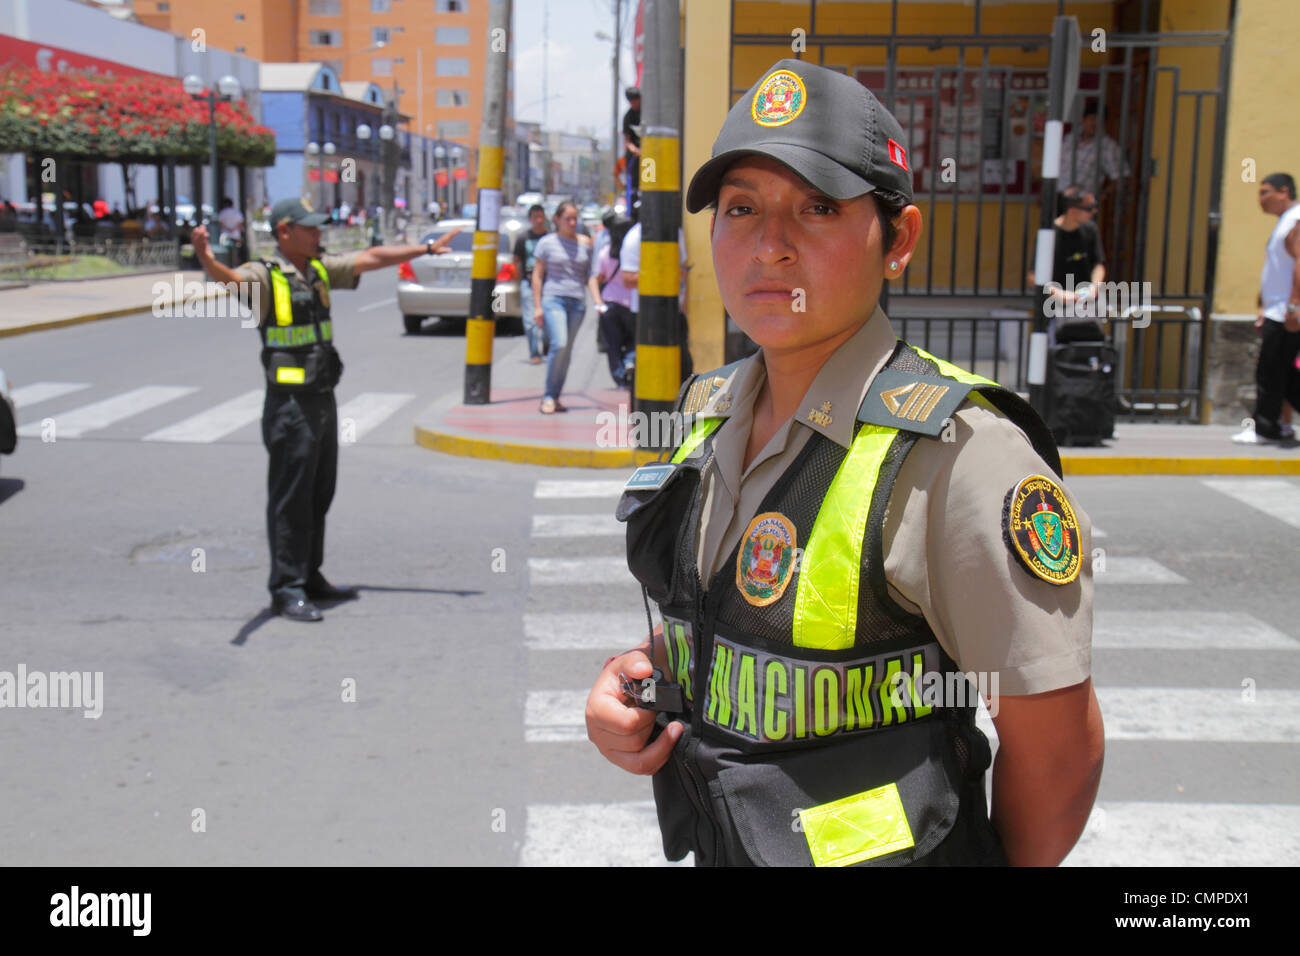 Tacna Peru,Calle San Martin,scène de rue,hispanique homme hommes,femme femme femmes,trafic,cop,police,Policia Nacional,police,uniforme,passage à niveau Banque D'Images